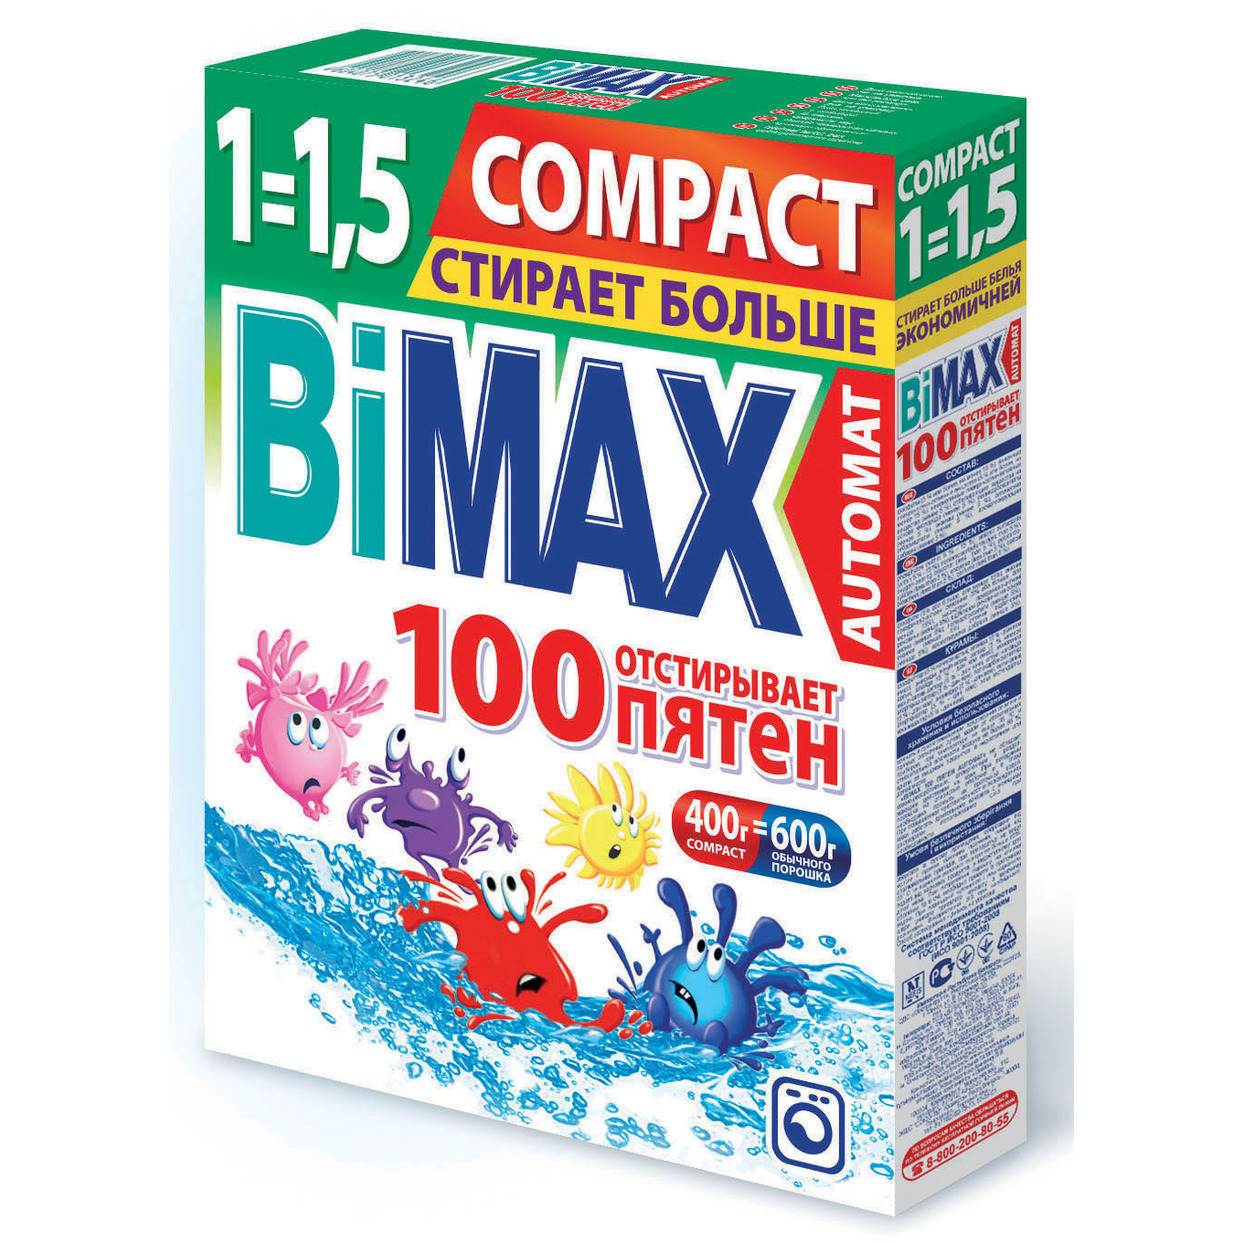 Стиральный порошок BiMax 100 пятен автомат 400г по акции в Пятерочке